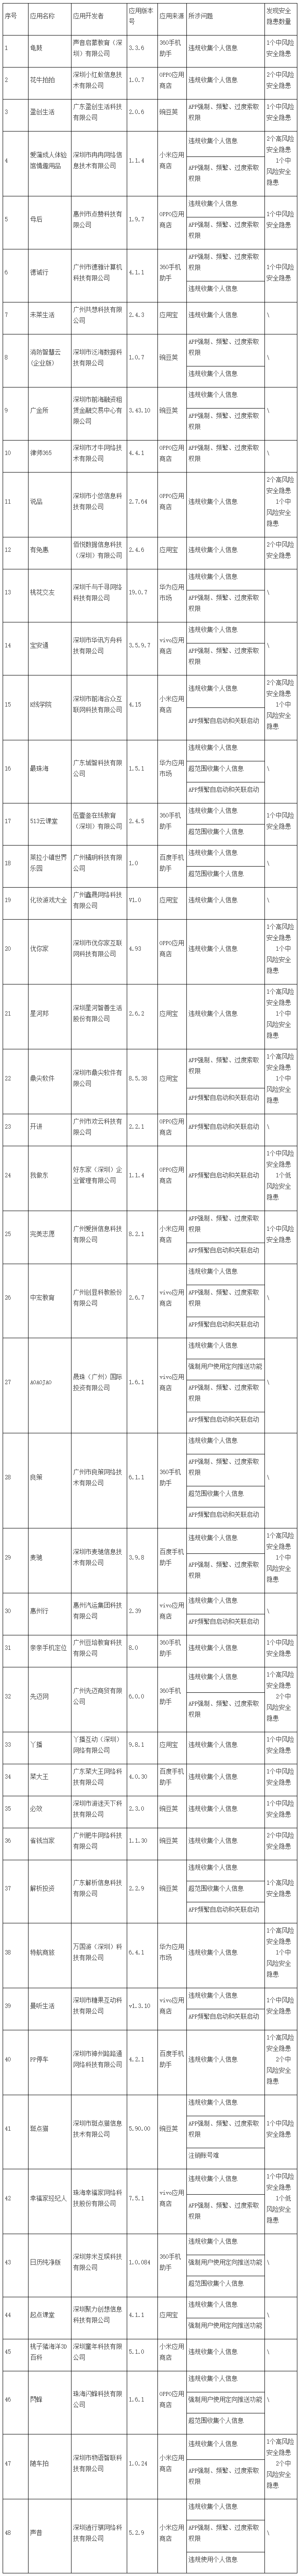 广东省通信管理局公开通报48款未按要求完成整改APP.png